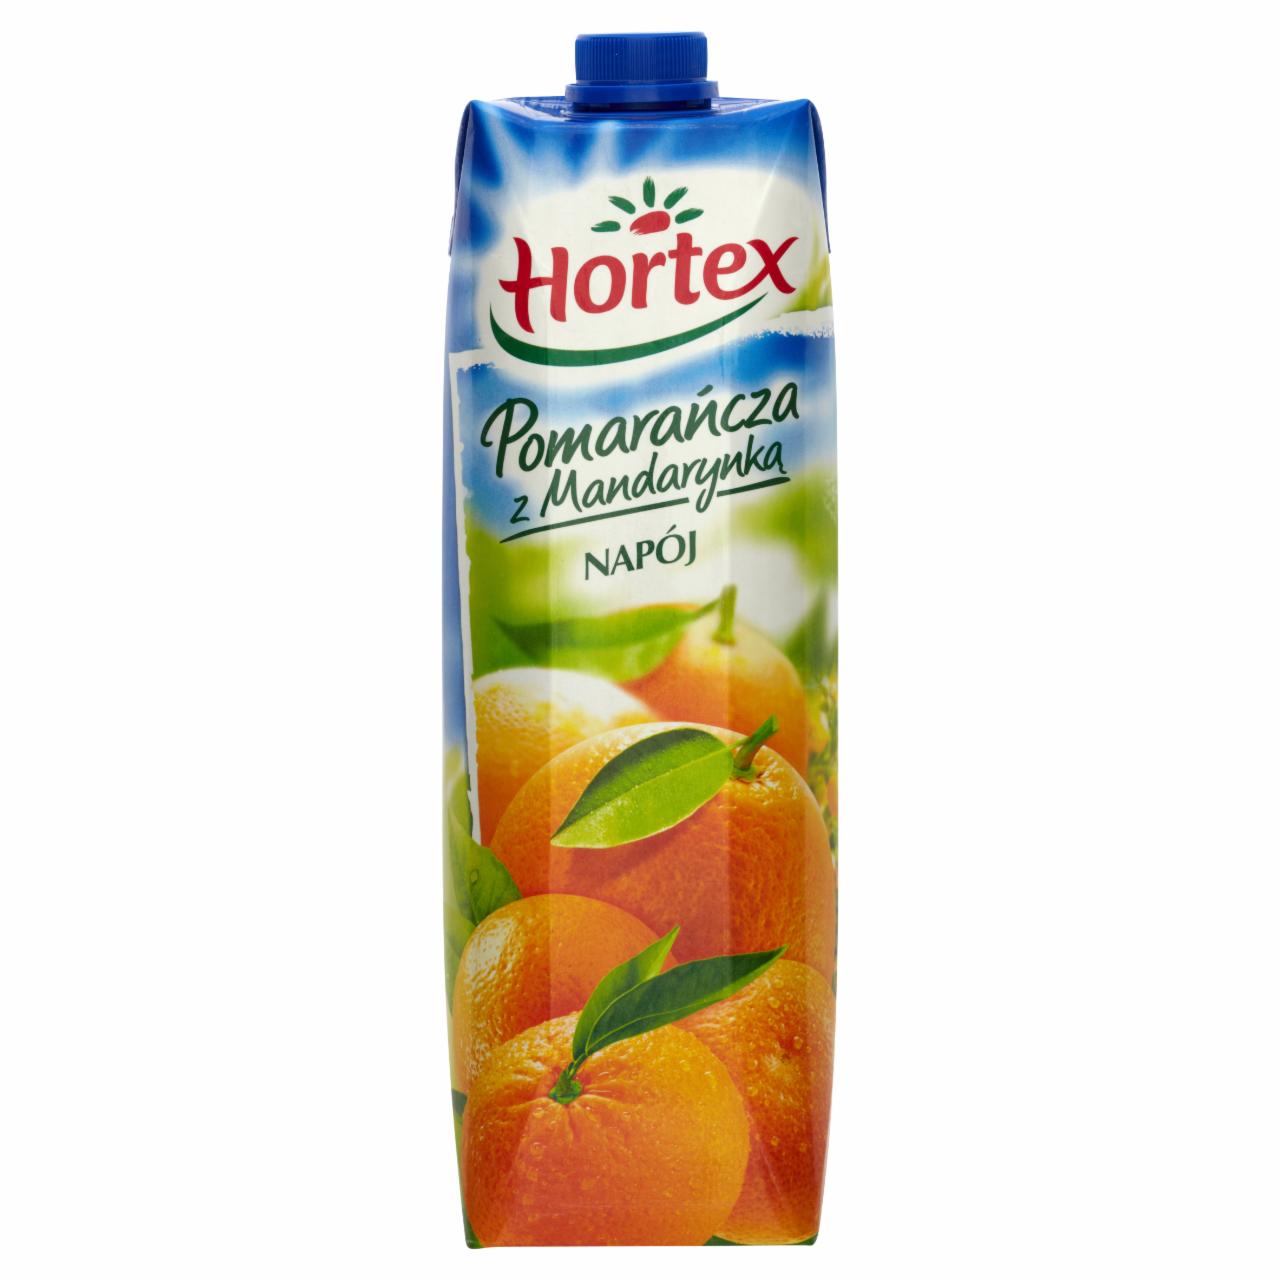 Zdjęcia - Hortex Pomarańcza z Mandarynką Napój 1 l